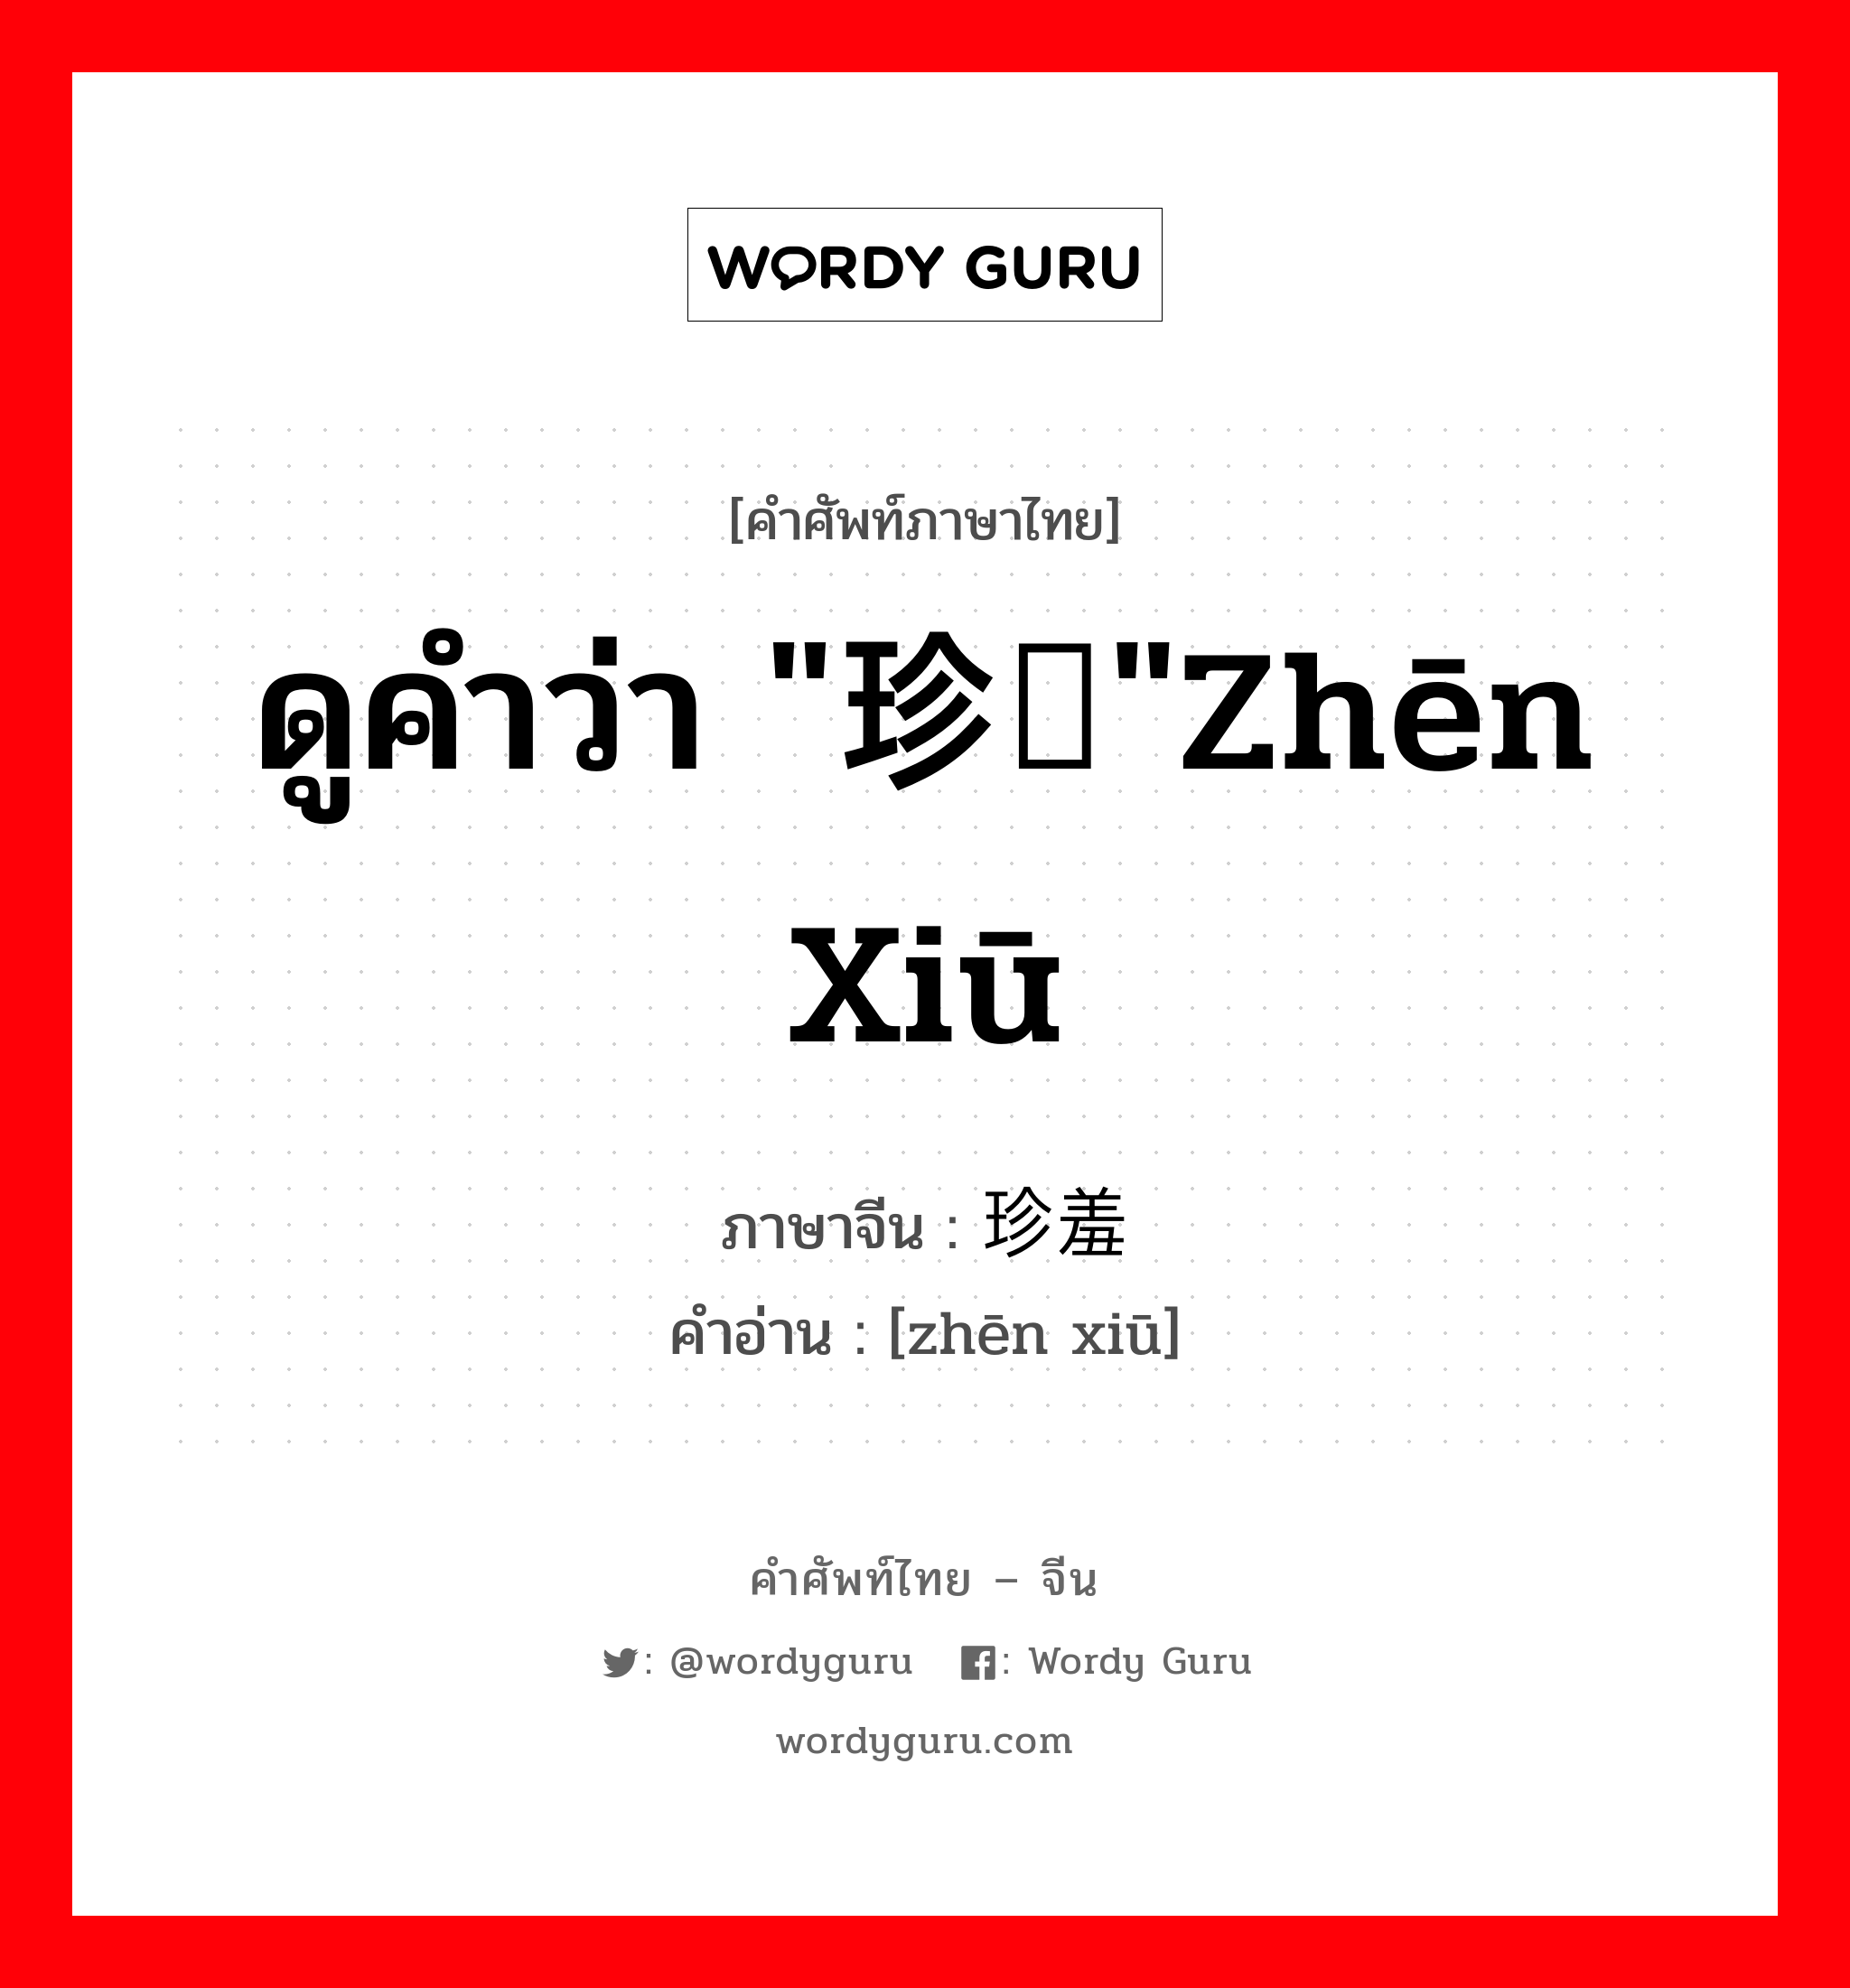 ดูคำว่า "珍馐"zhēn xiū ภาษาจีนคืออะไร, คำศัพท์ภาษาไทย - จีน ดูคำว่า "珍馐"zhēn xiū ภาษาจีน 珍羞 คำอ่าน [zhēn xiū]